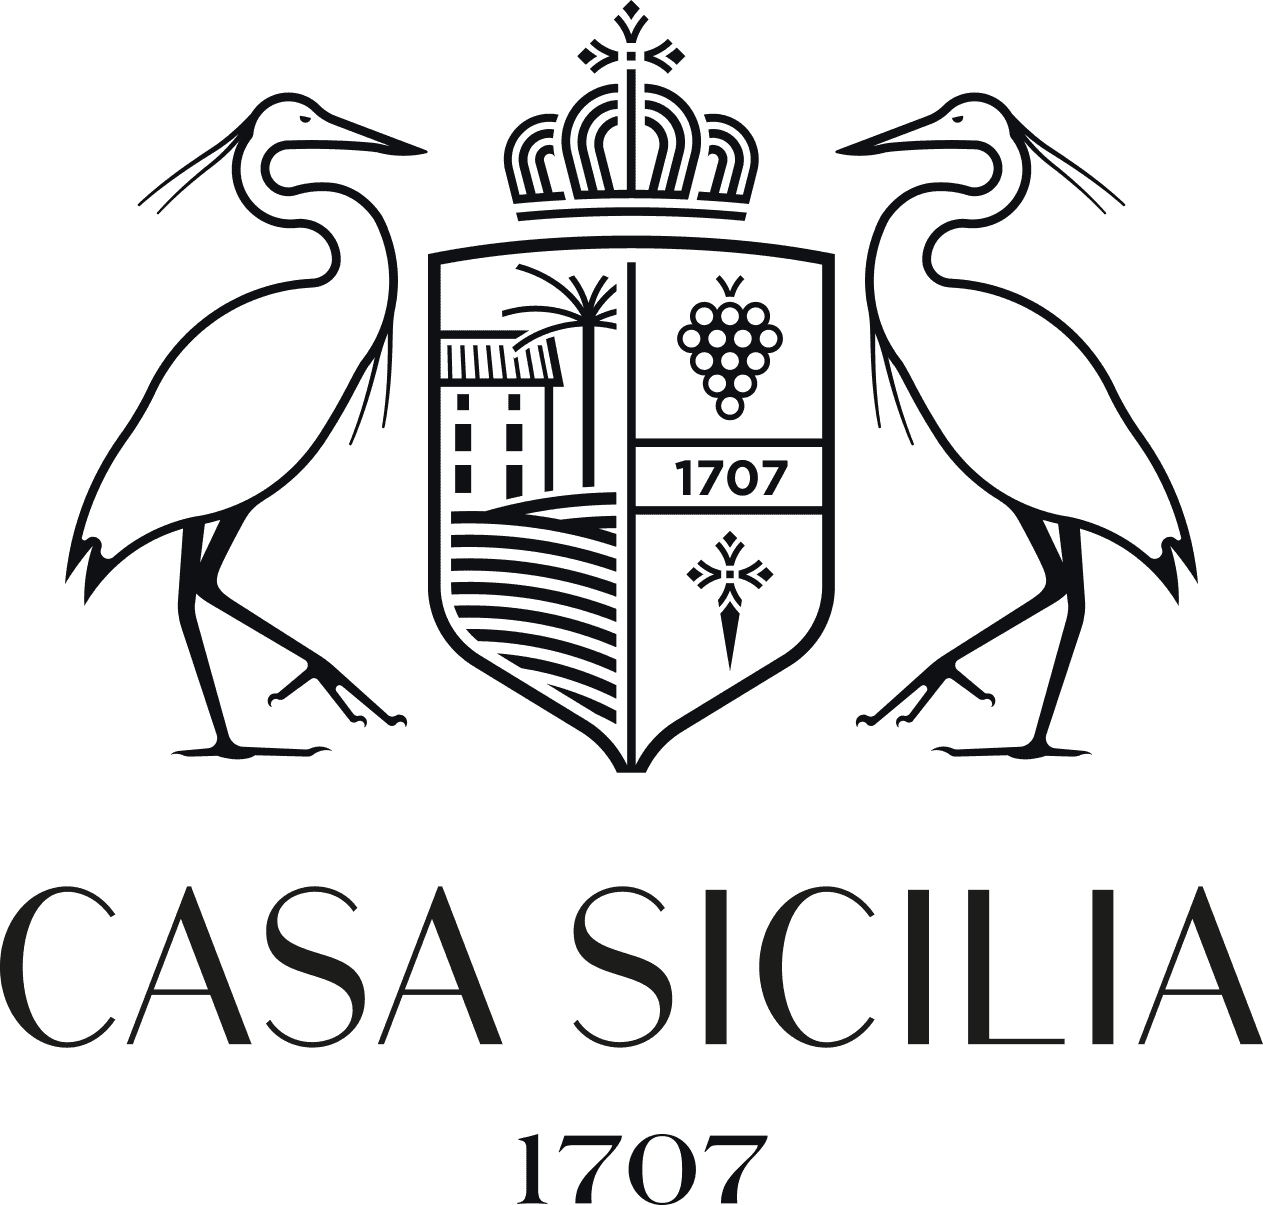 Origen de los vinos de Casa Cesilia